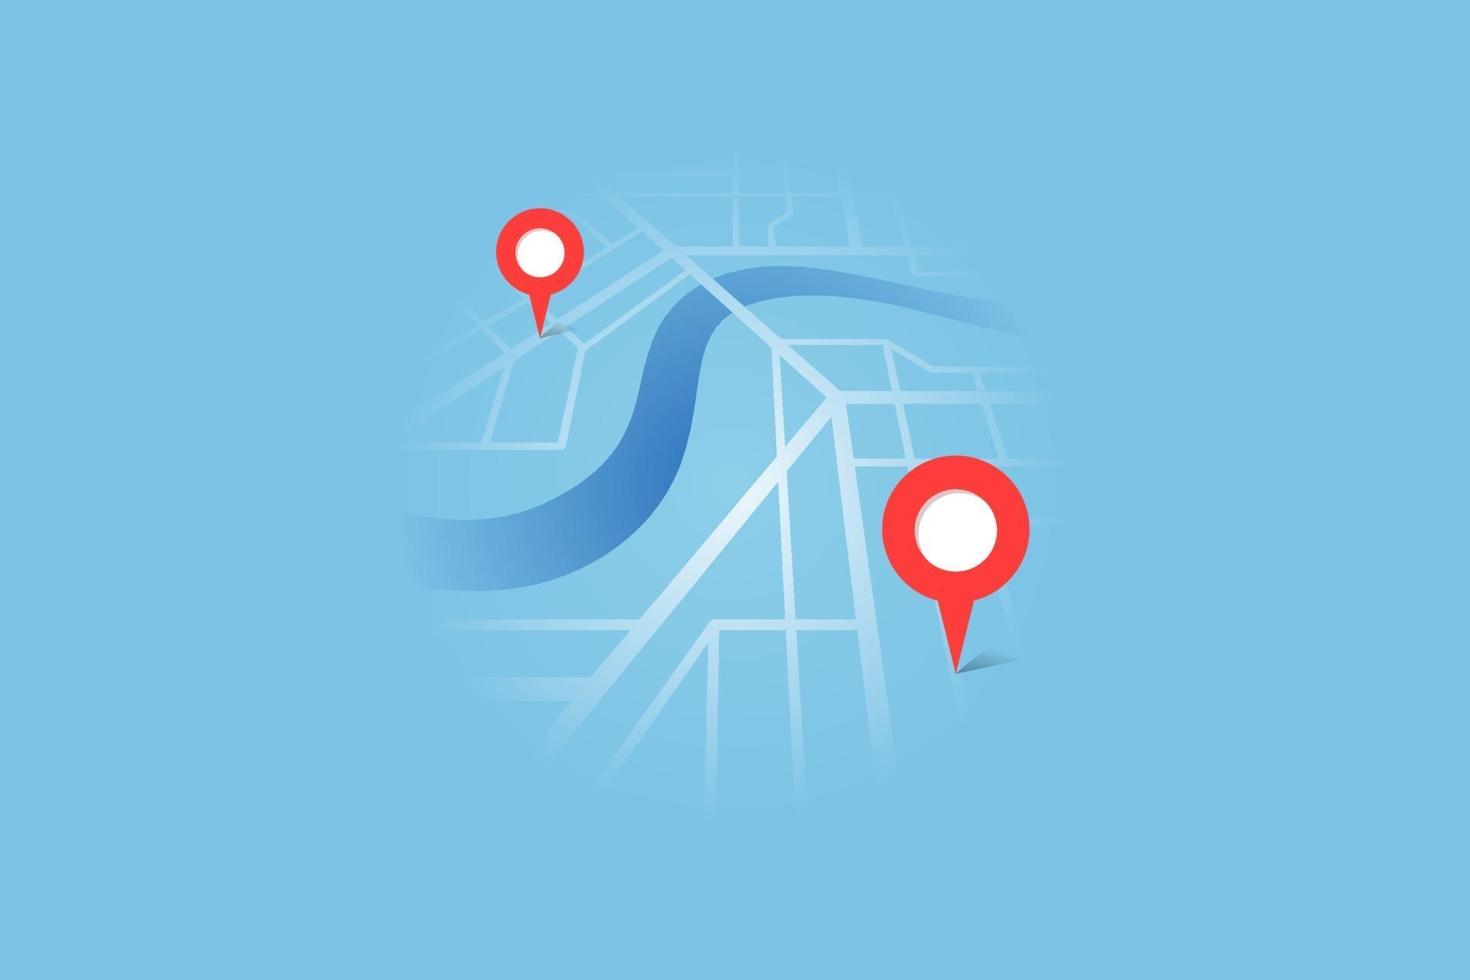 piano della mappa stradale della città con gps del fiume posizionare i perni e il percorso di navigazione tra i marcatori di punti. vettore colore blu vista prospettica isometrica illustrazione eps schema di posizione